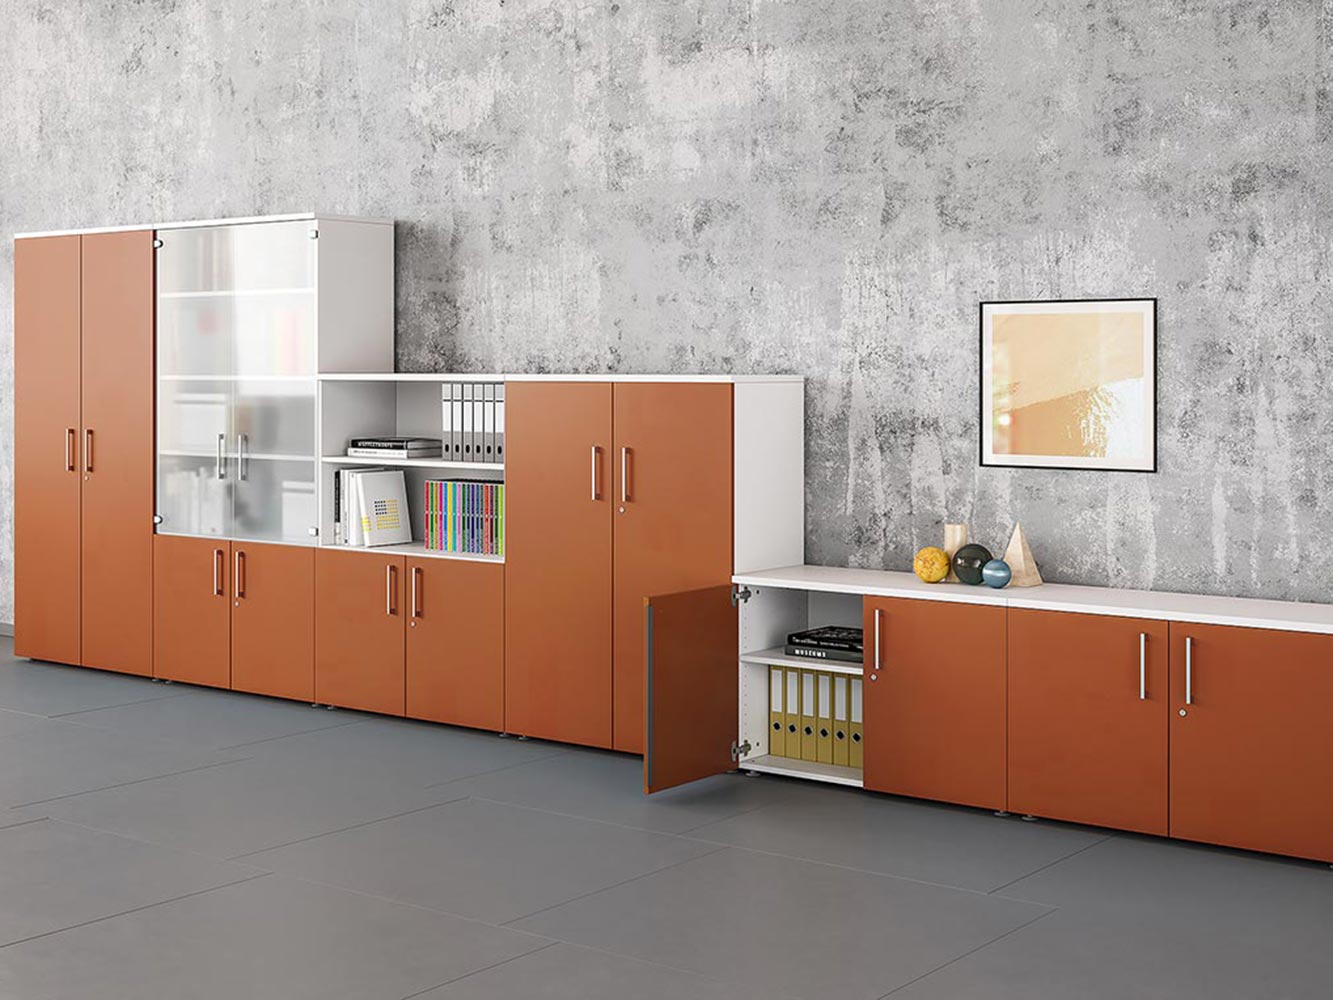 Rangement orange, choisir la couleur de son mobilier professionnel par Global Concept